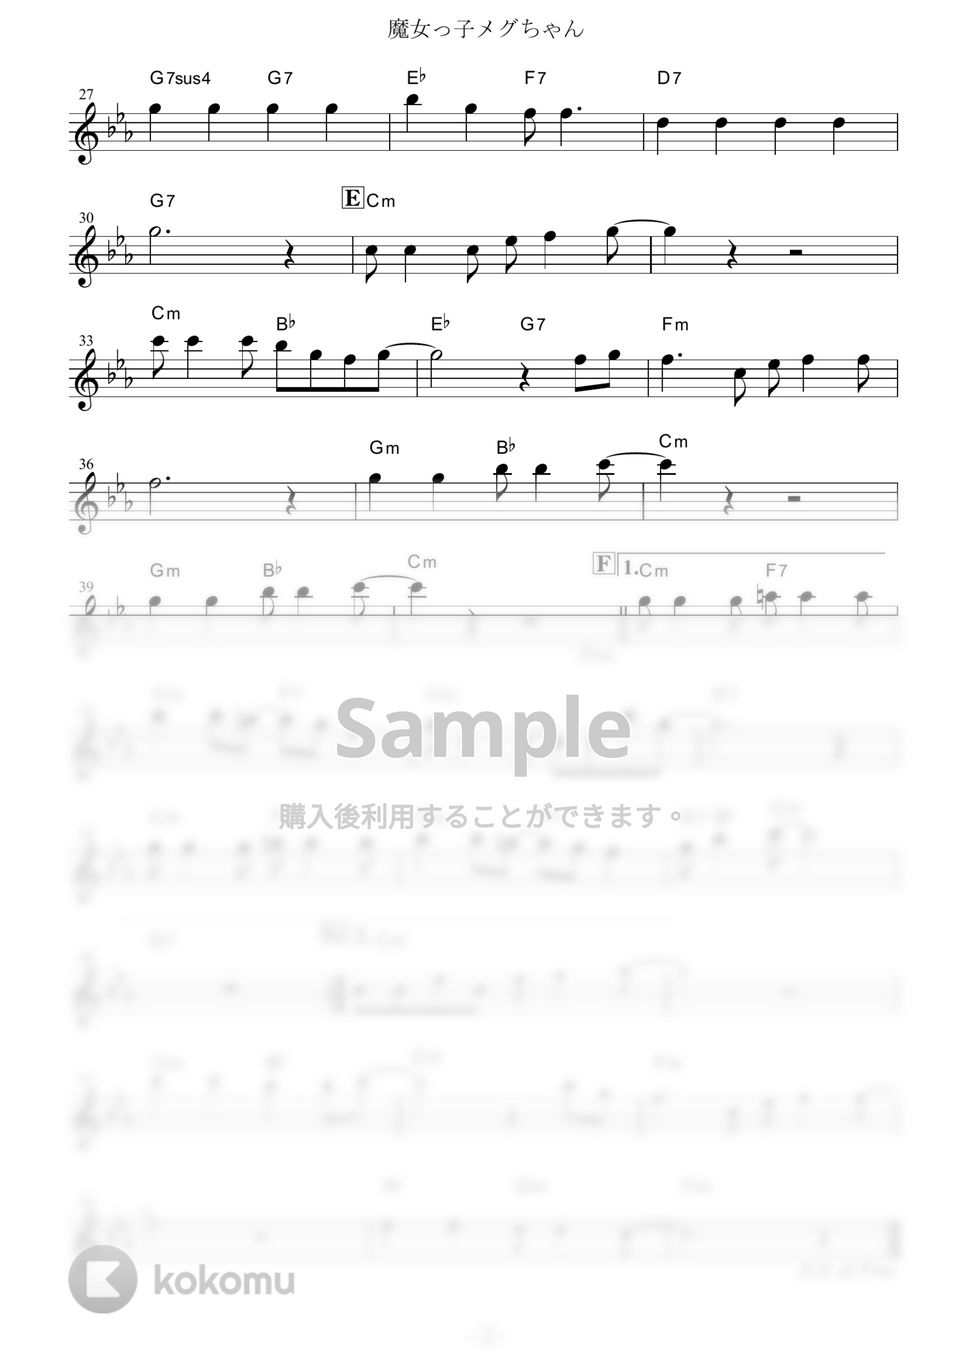 前川陽子 - 魔女っ子メグちゃん (『魔女っ子メグちゃん』 / in Bb) by muta-sax